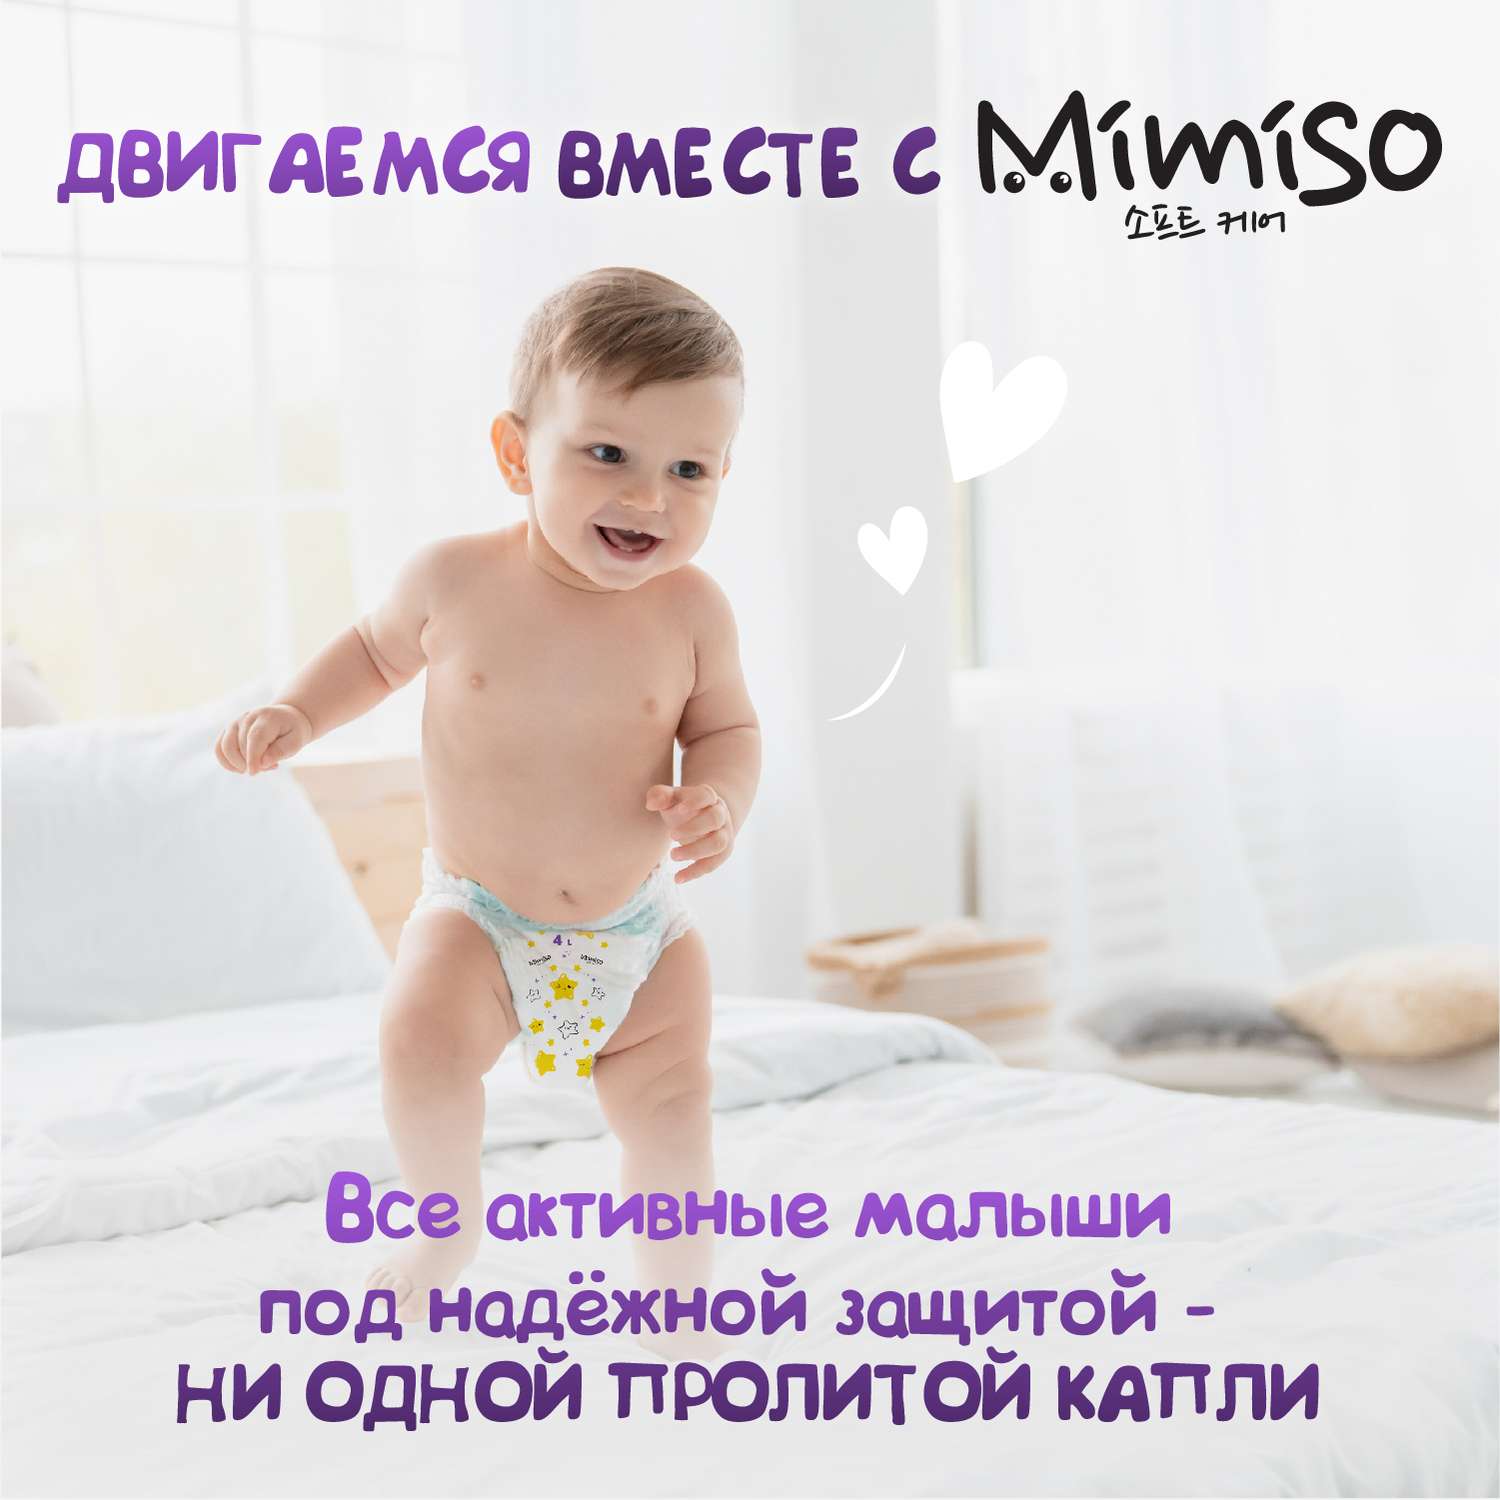 Подгузники Mimiso одноразовые для детей 3/М 4-9 кг 52шт - фото 9